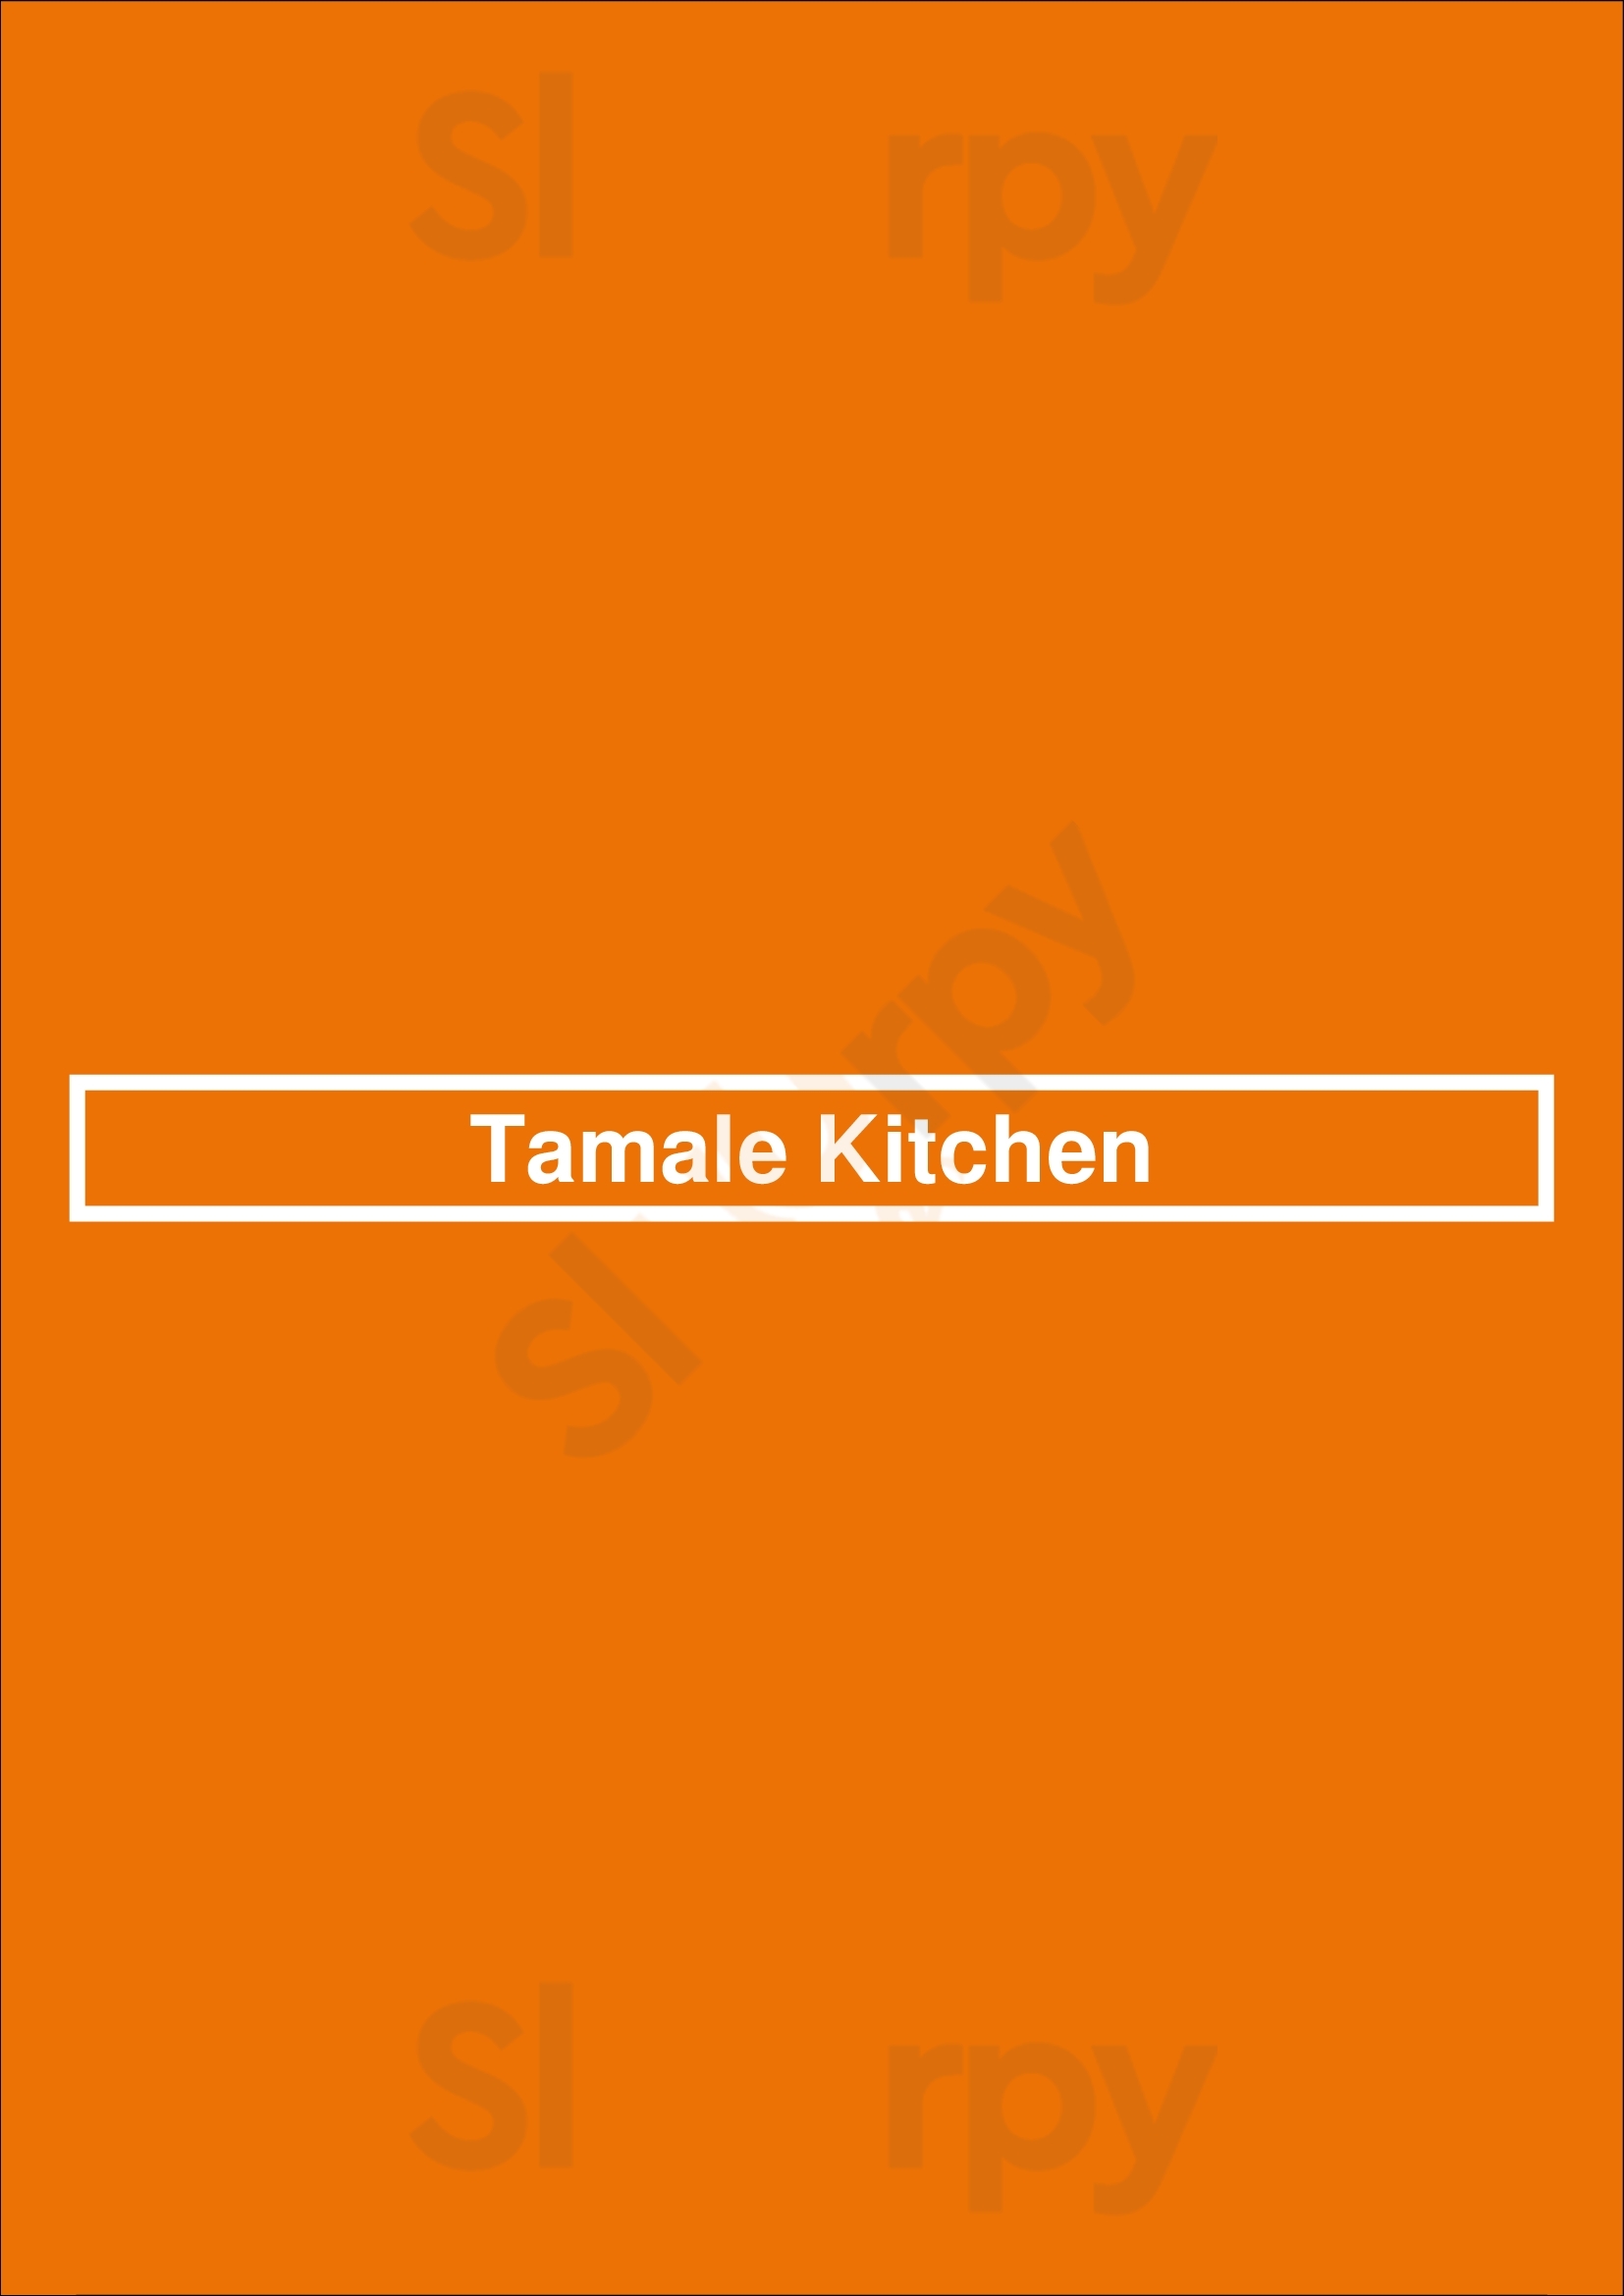 Tamale Kitchen Lakewood Menu - 1